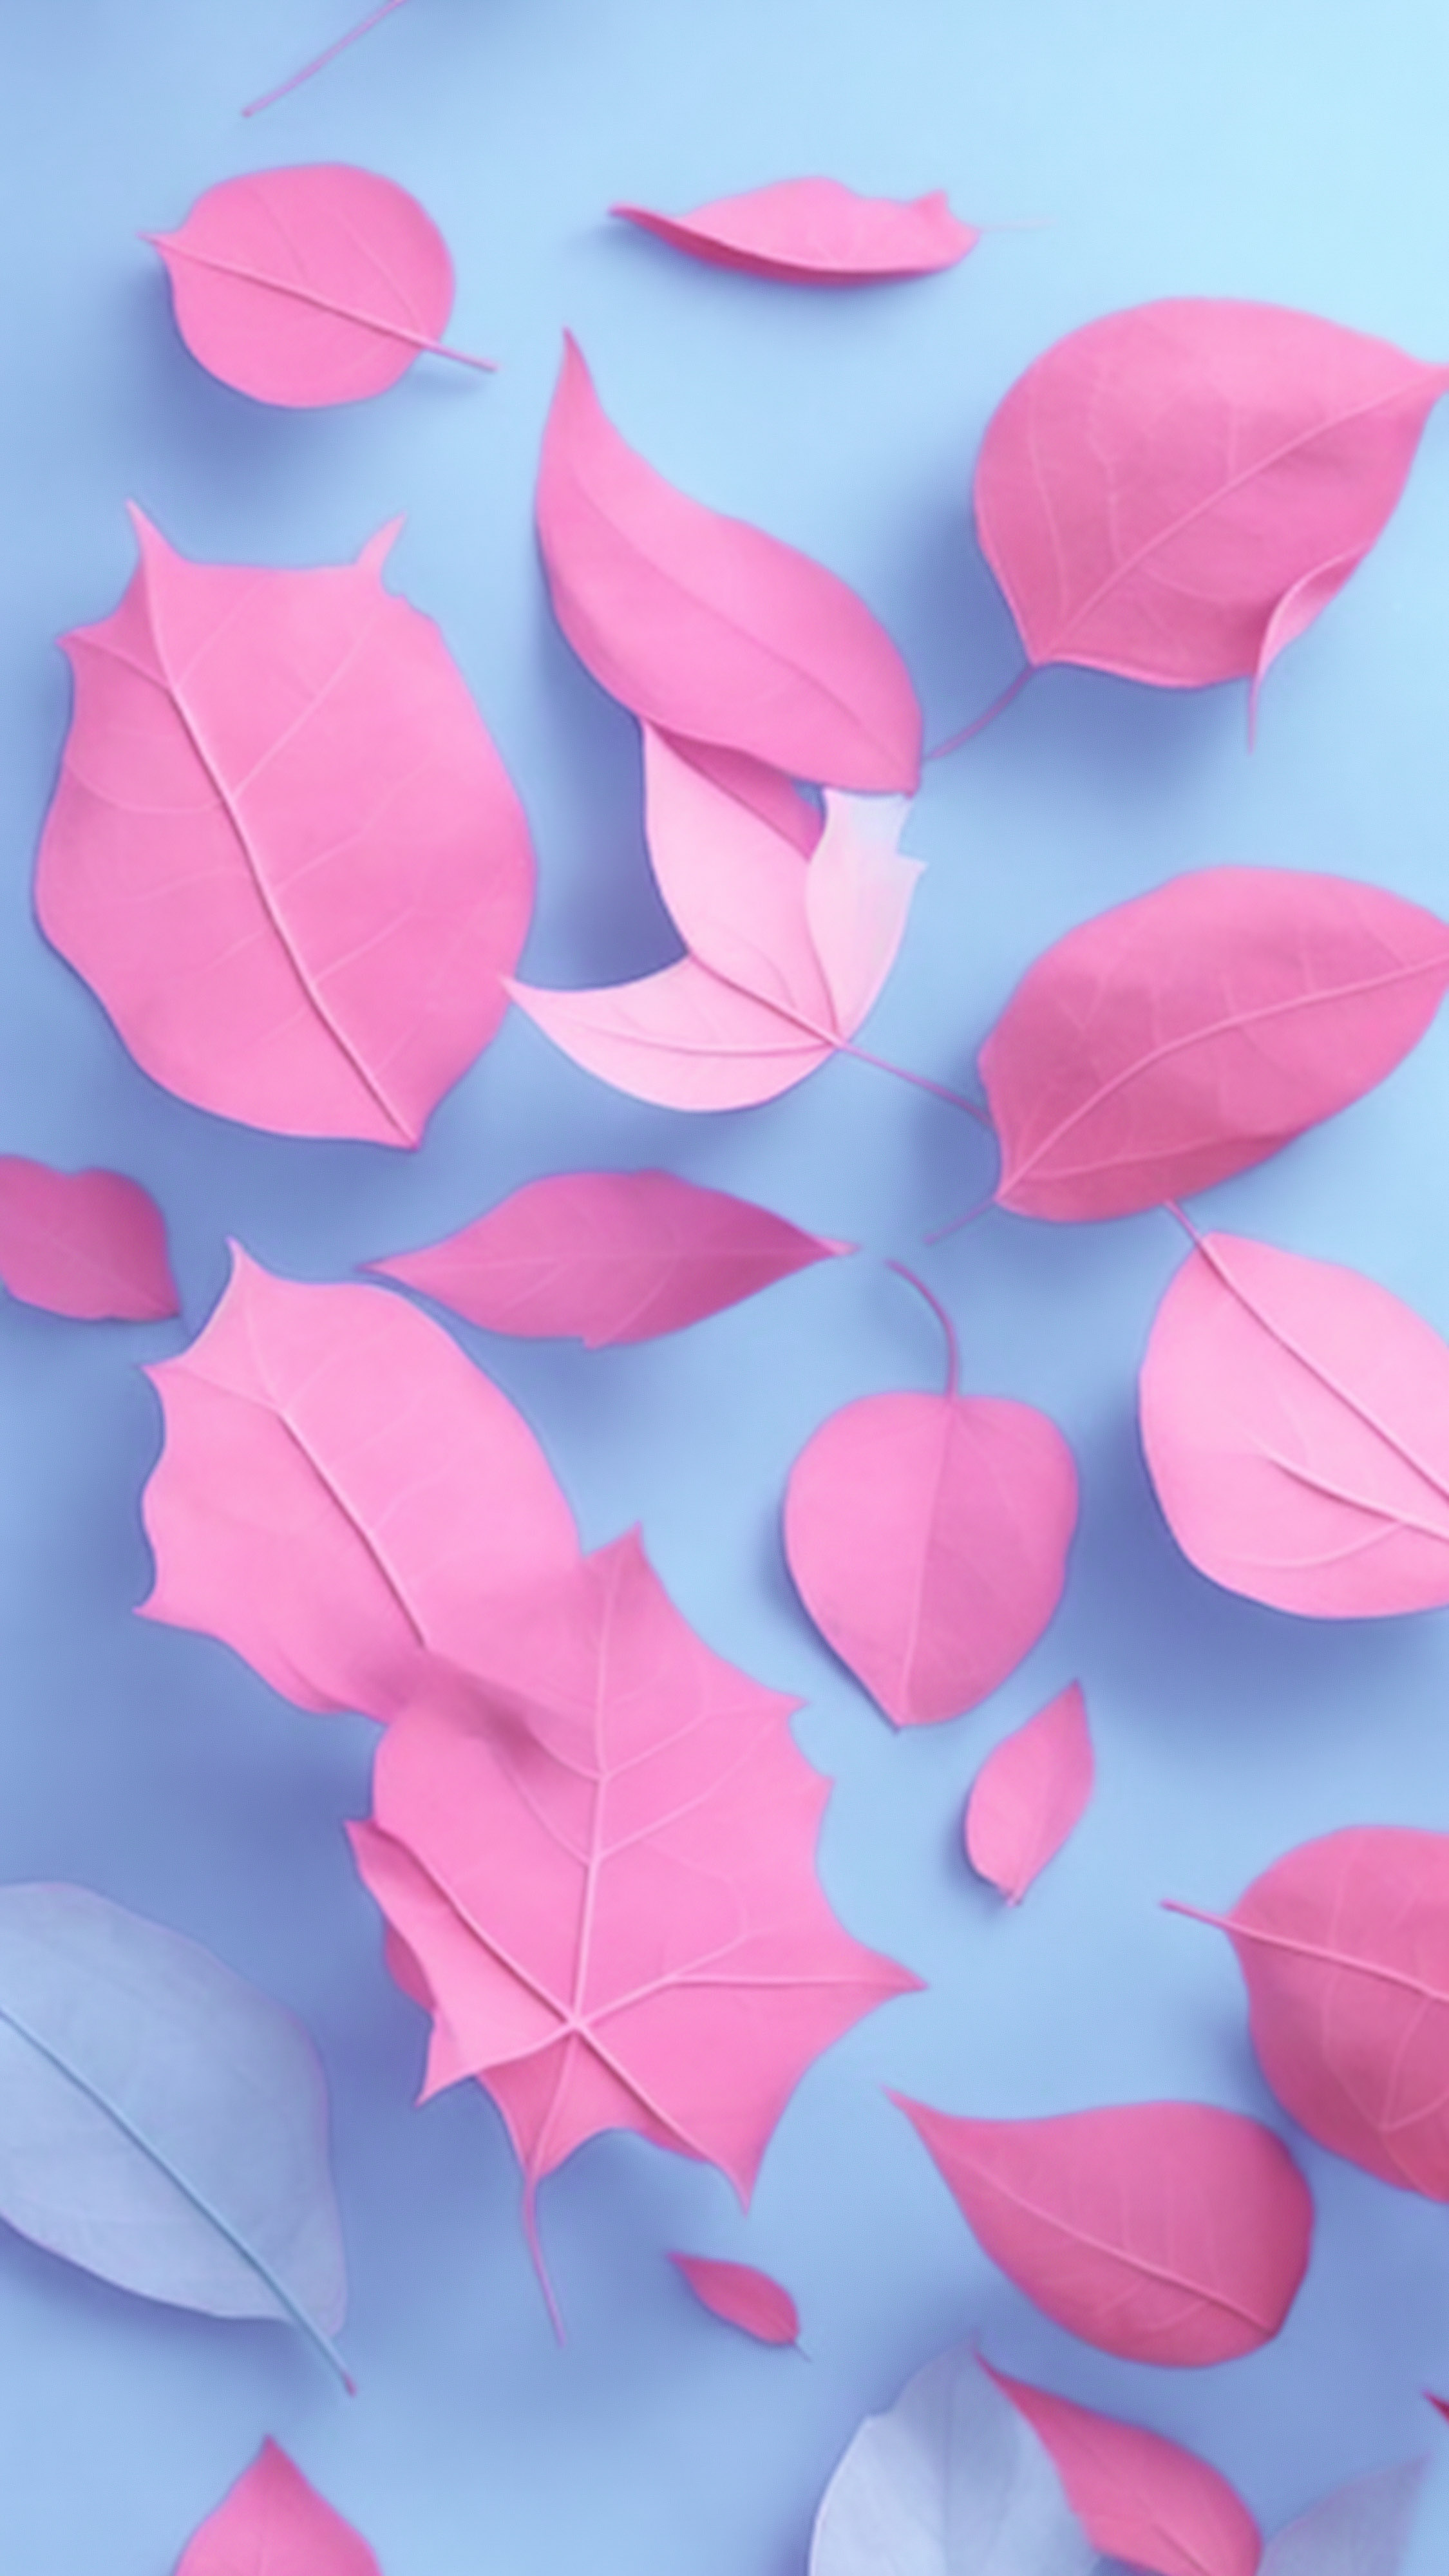 Transformez l'apparence de votre appareil avec notre écran d'accueil mignon pour iPhone, présentant diverses formes et tailles de feuilles roses dispersées sur un arrière-plan bleu doux.